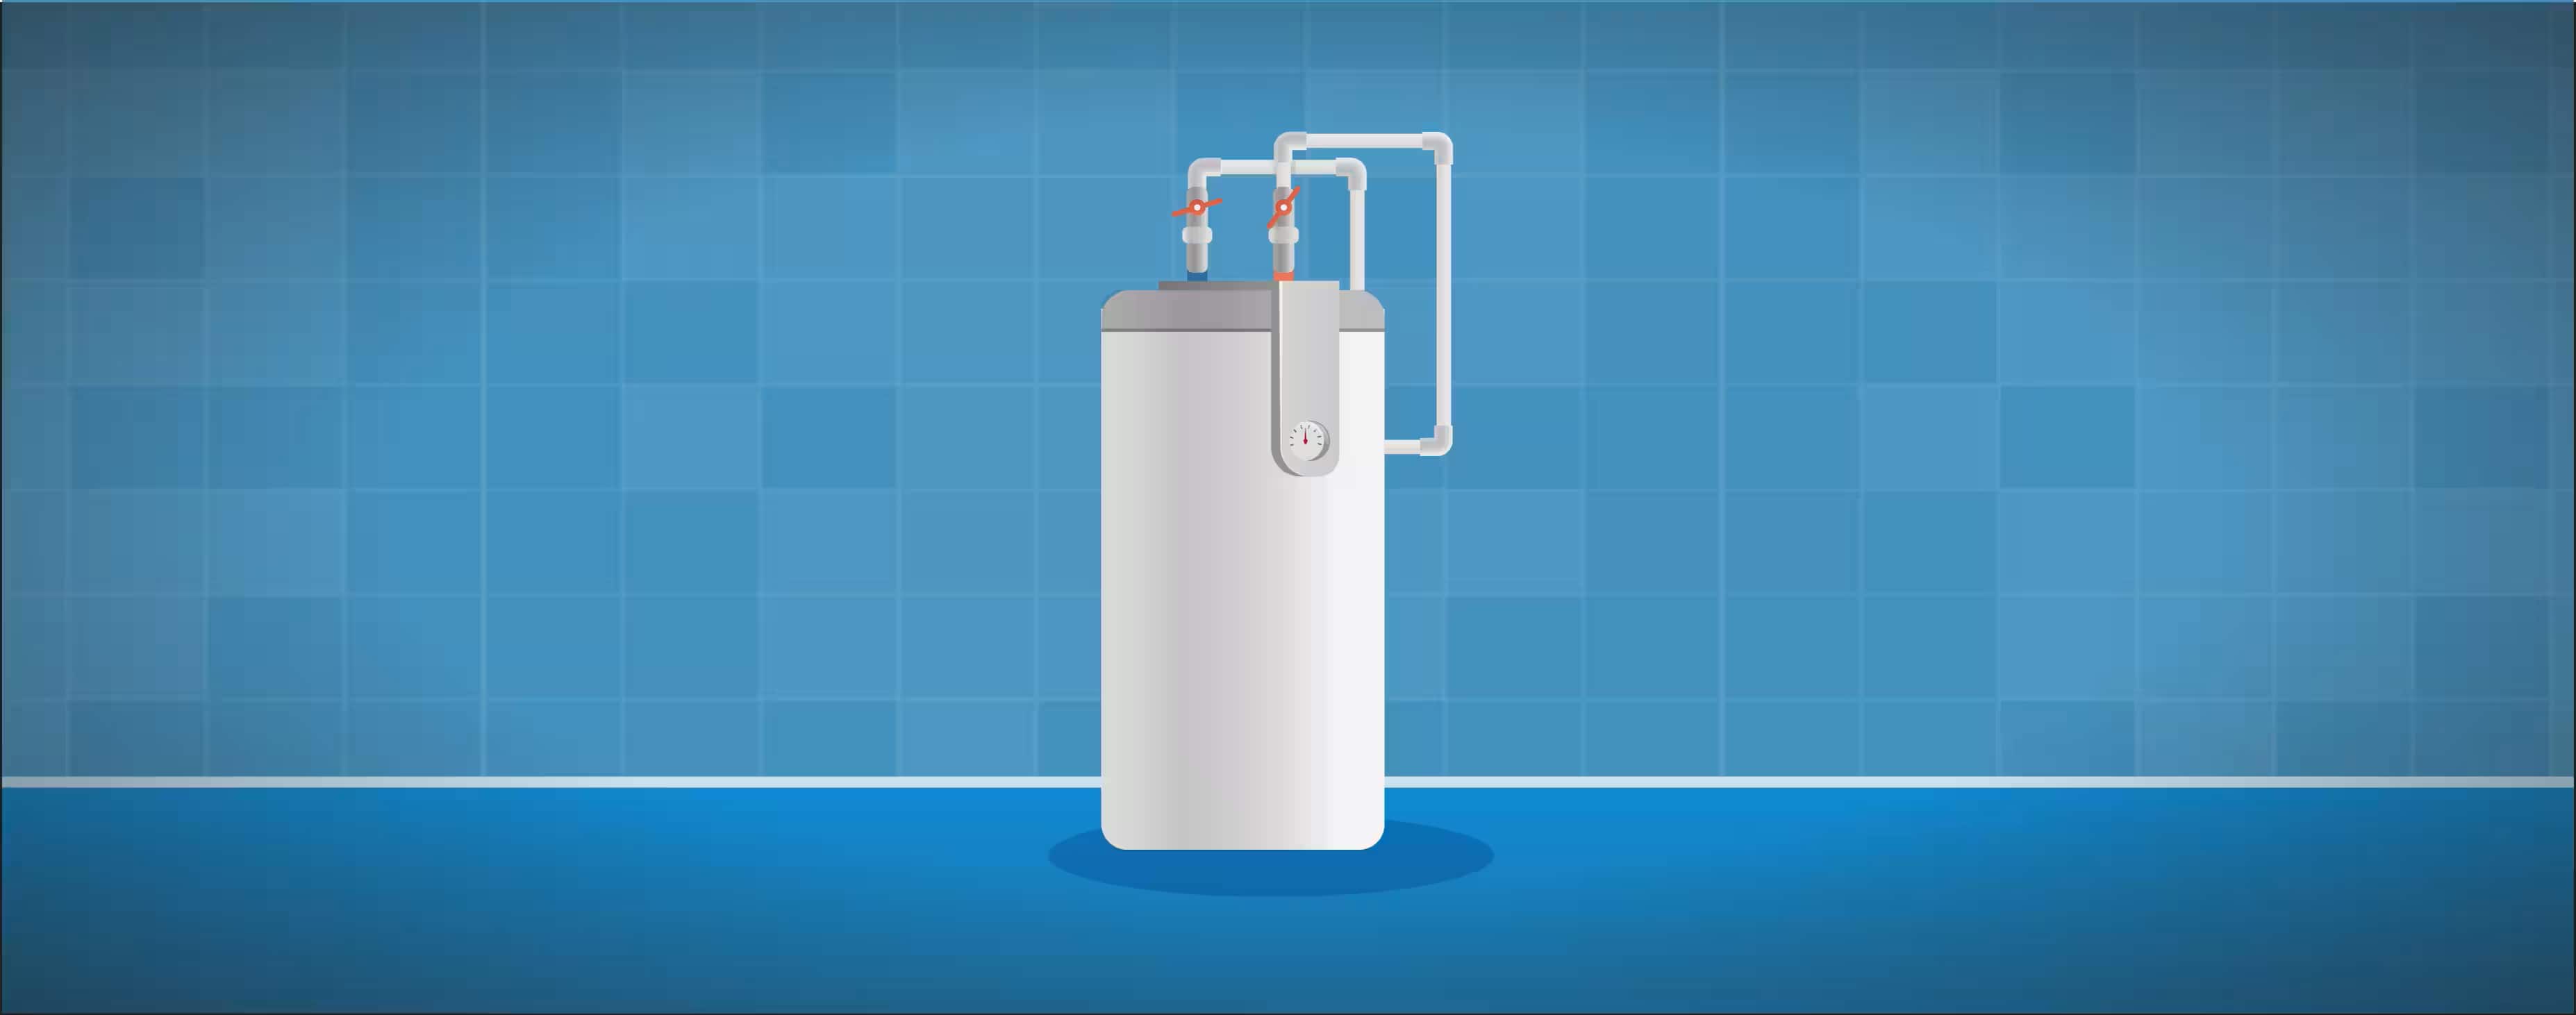 Electric Water Heaters - Water Heaters - Ferguson